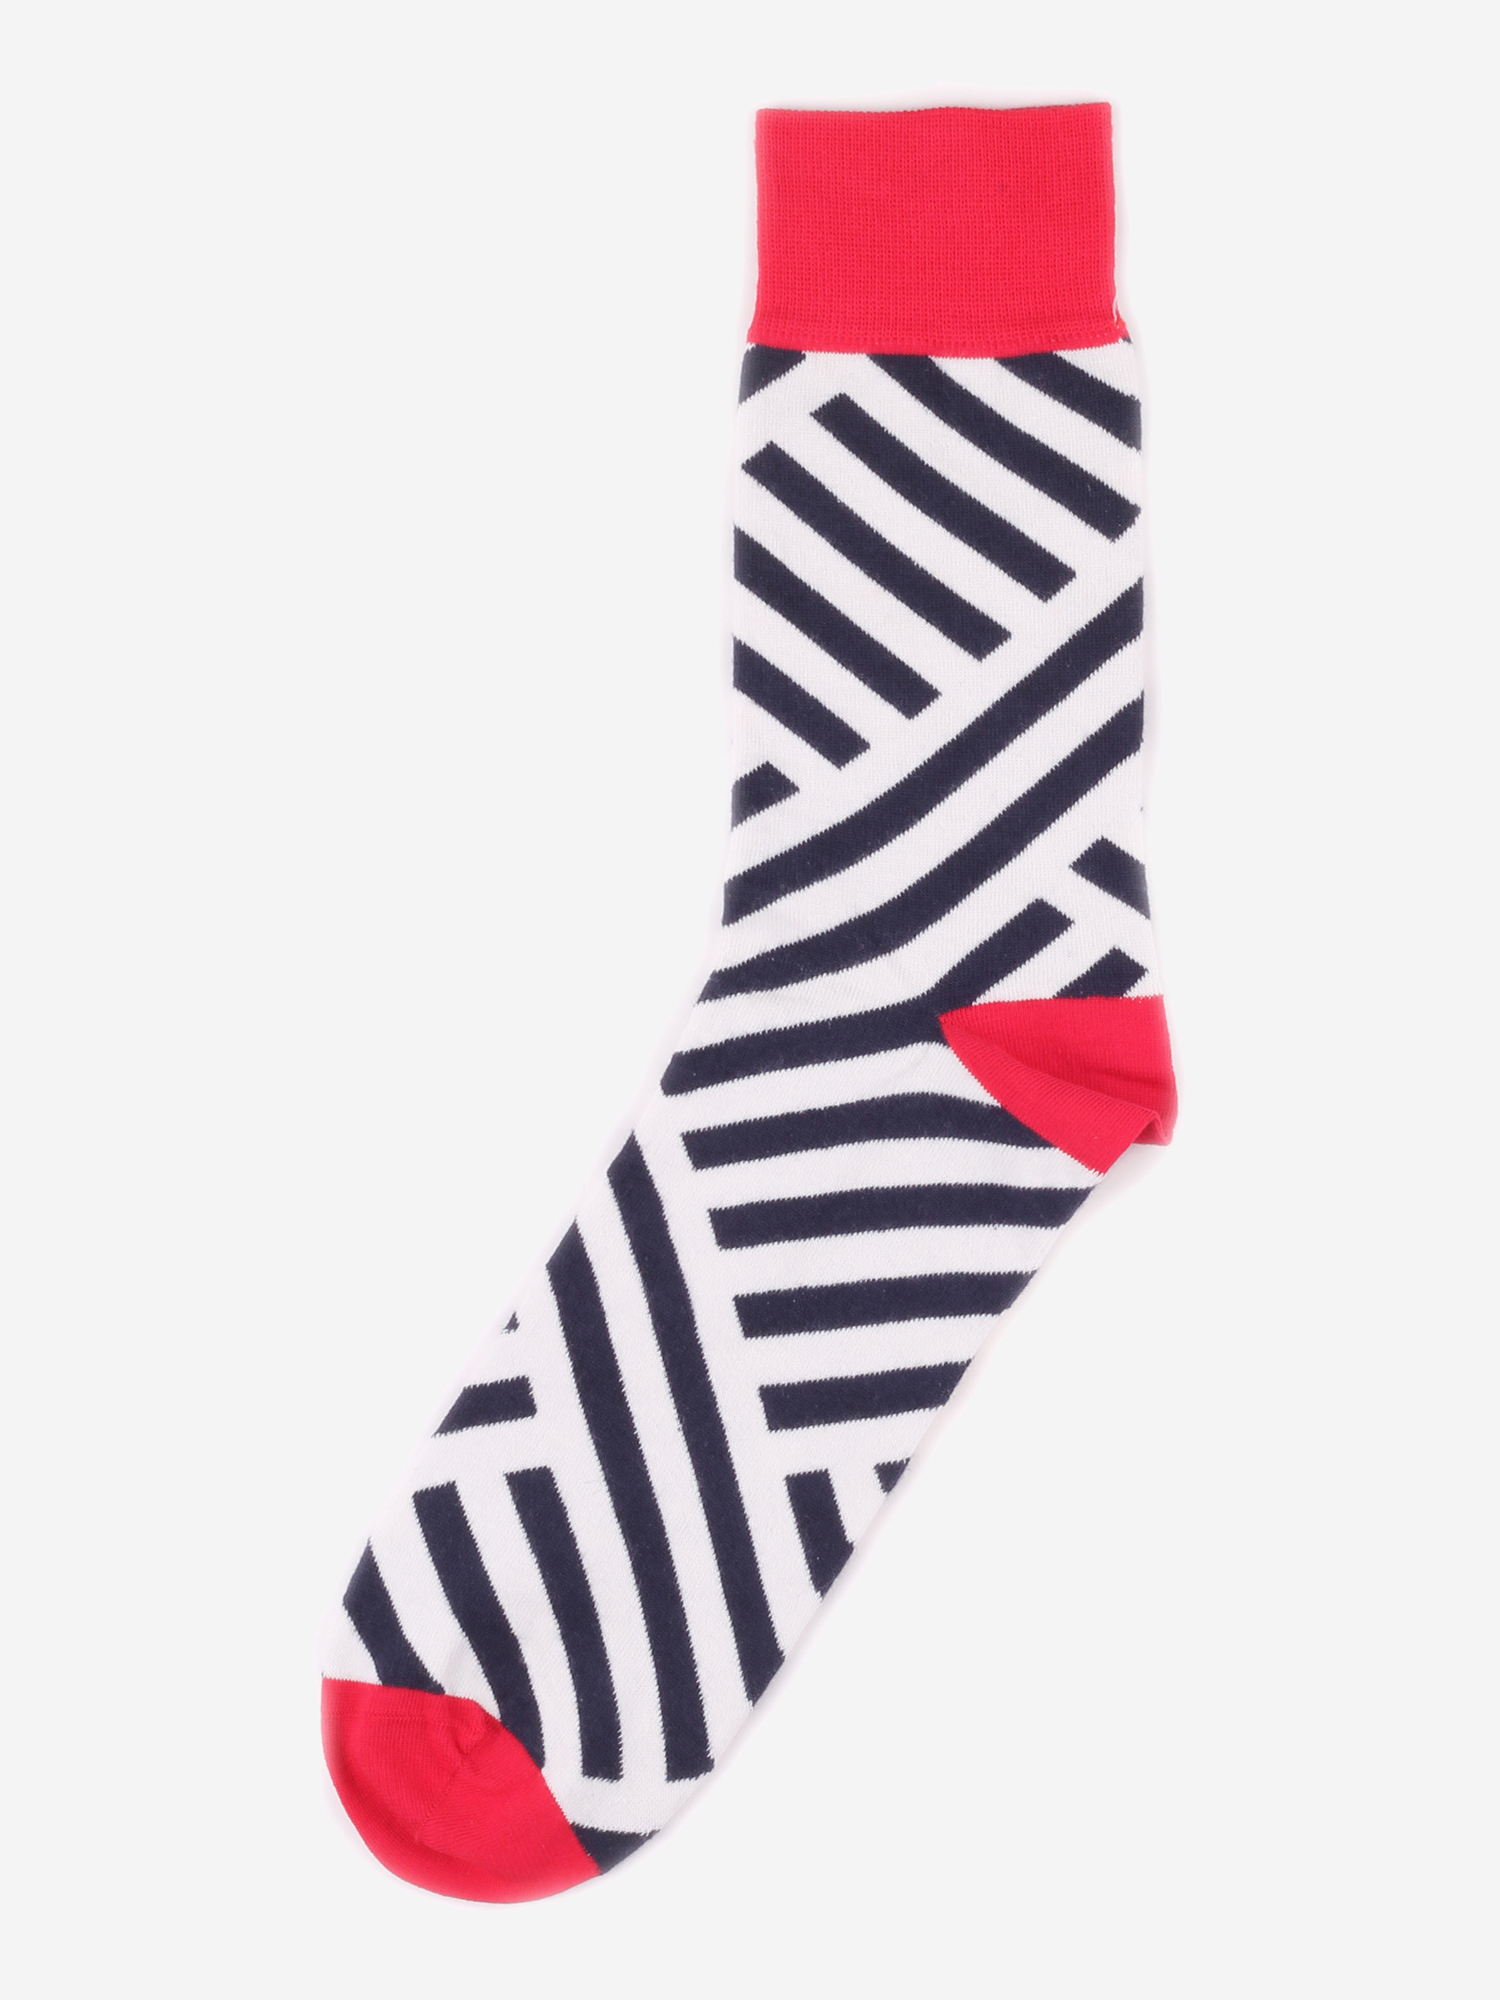 Дизайнерские носки Burning Heels - Diagonal Stripes - Red/Black, Красный